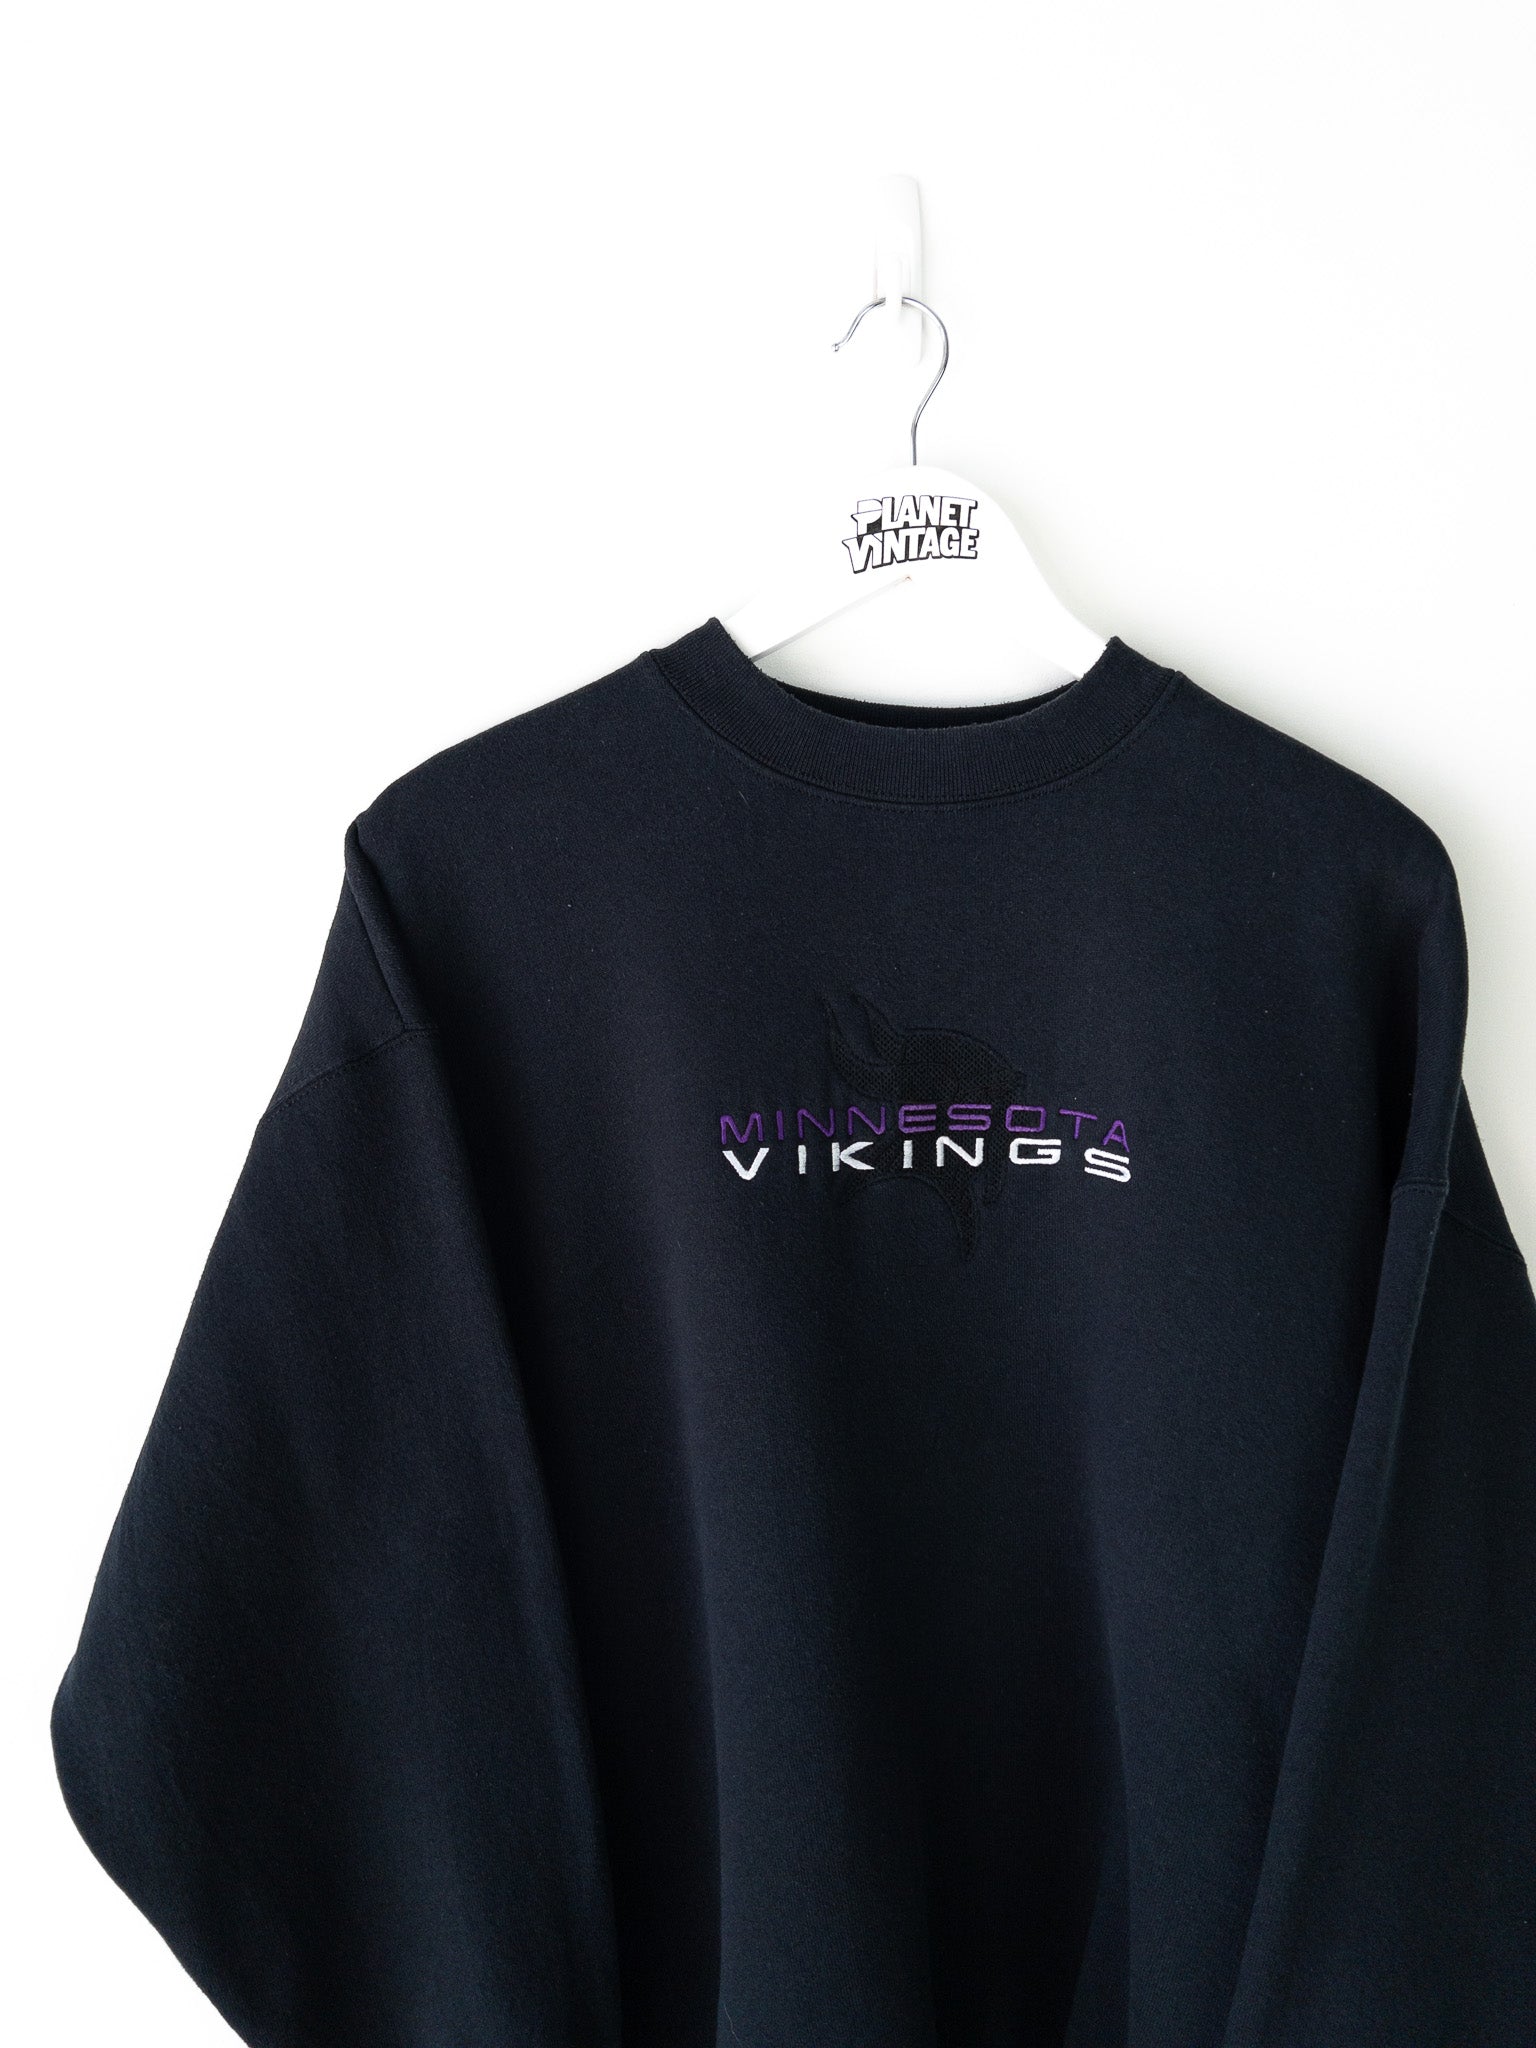 Vintage Minnesota Vikings Sweatshirt (XL)